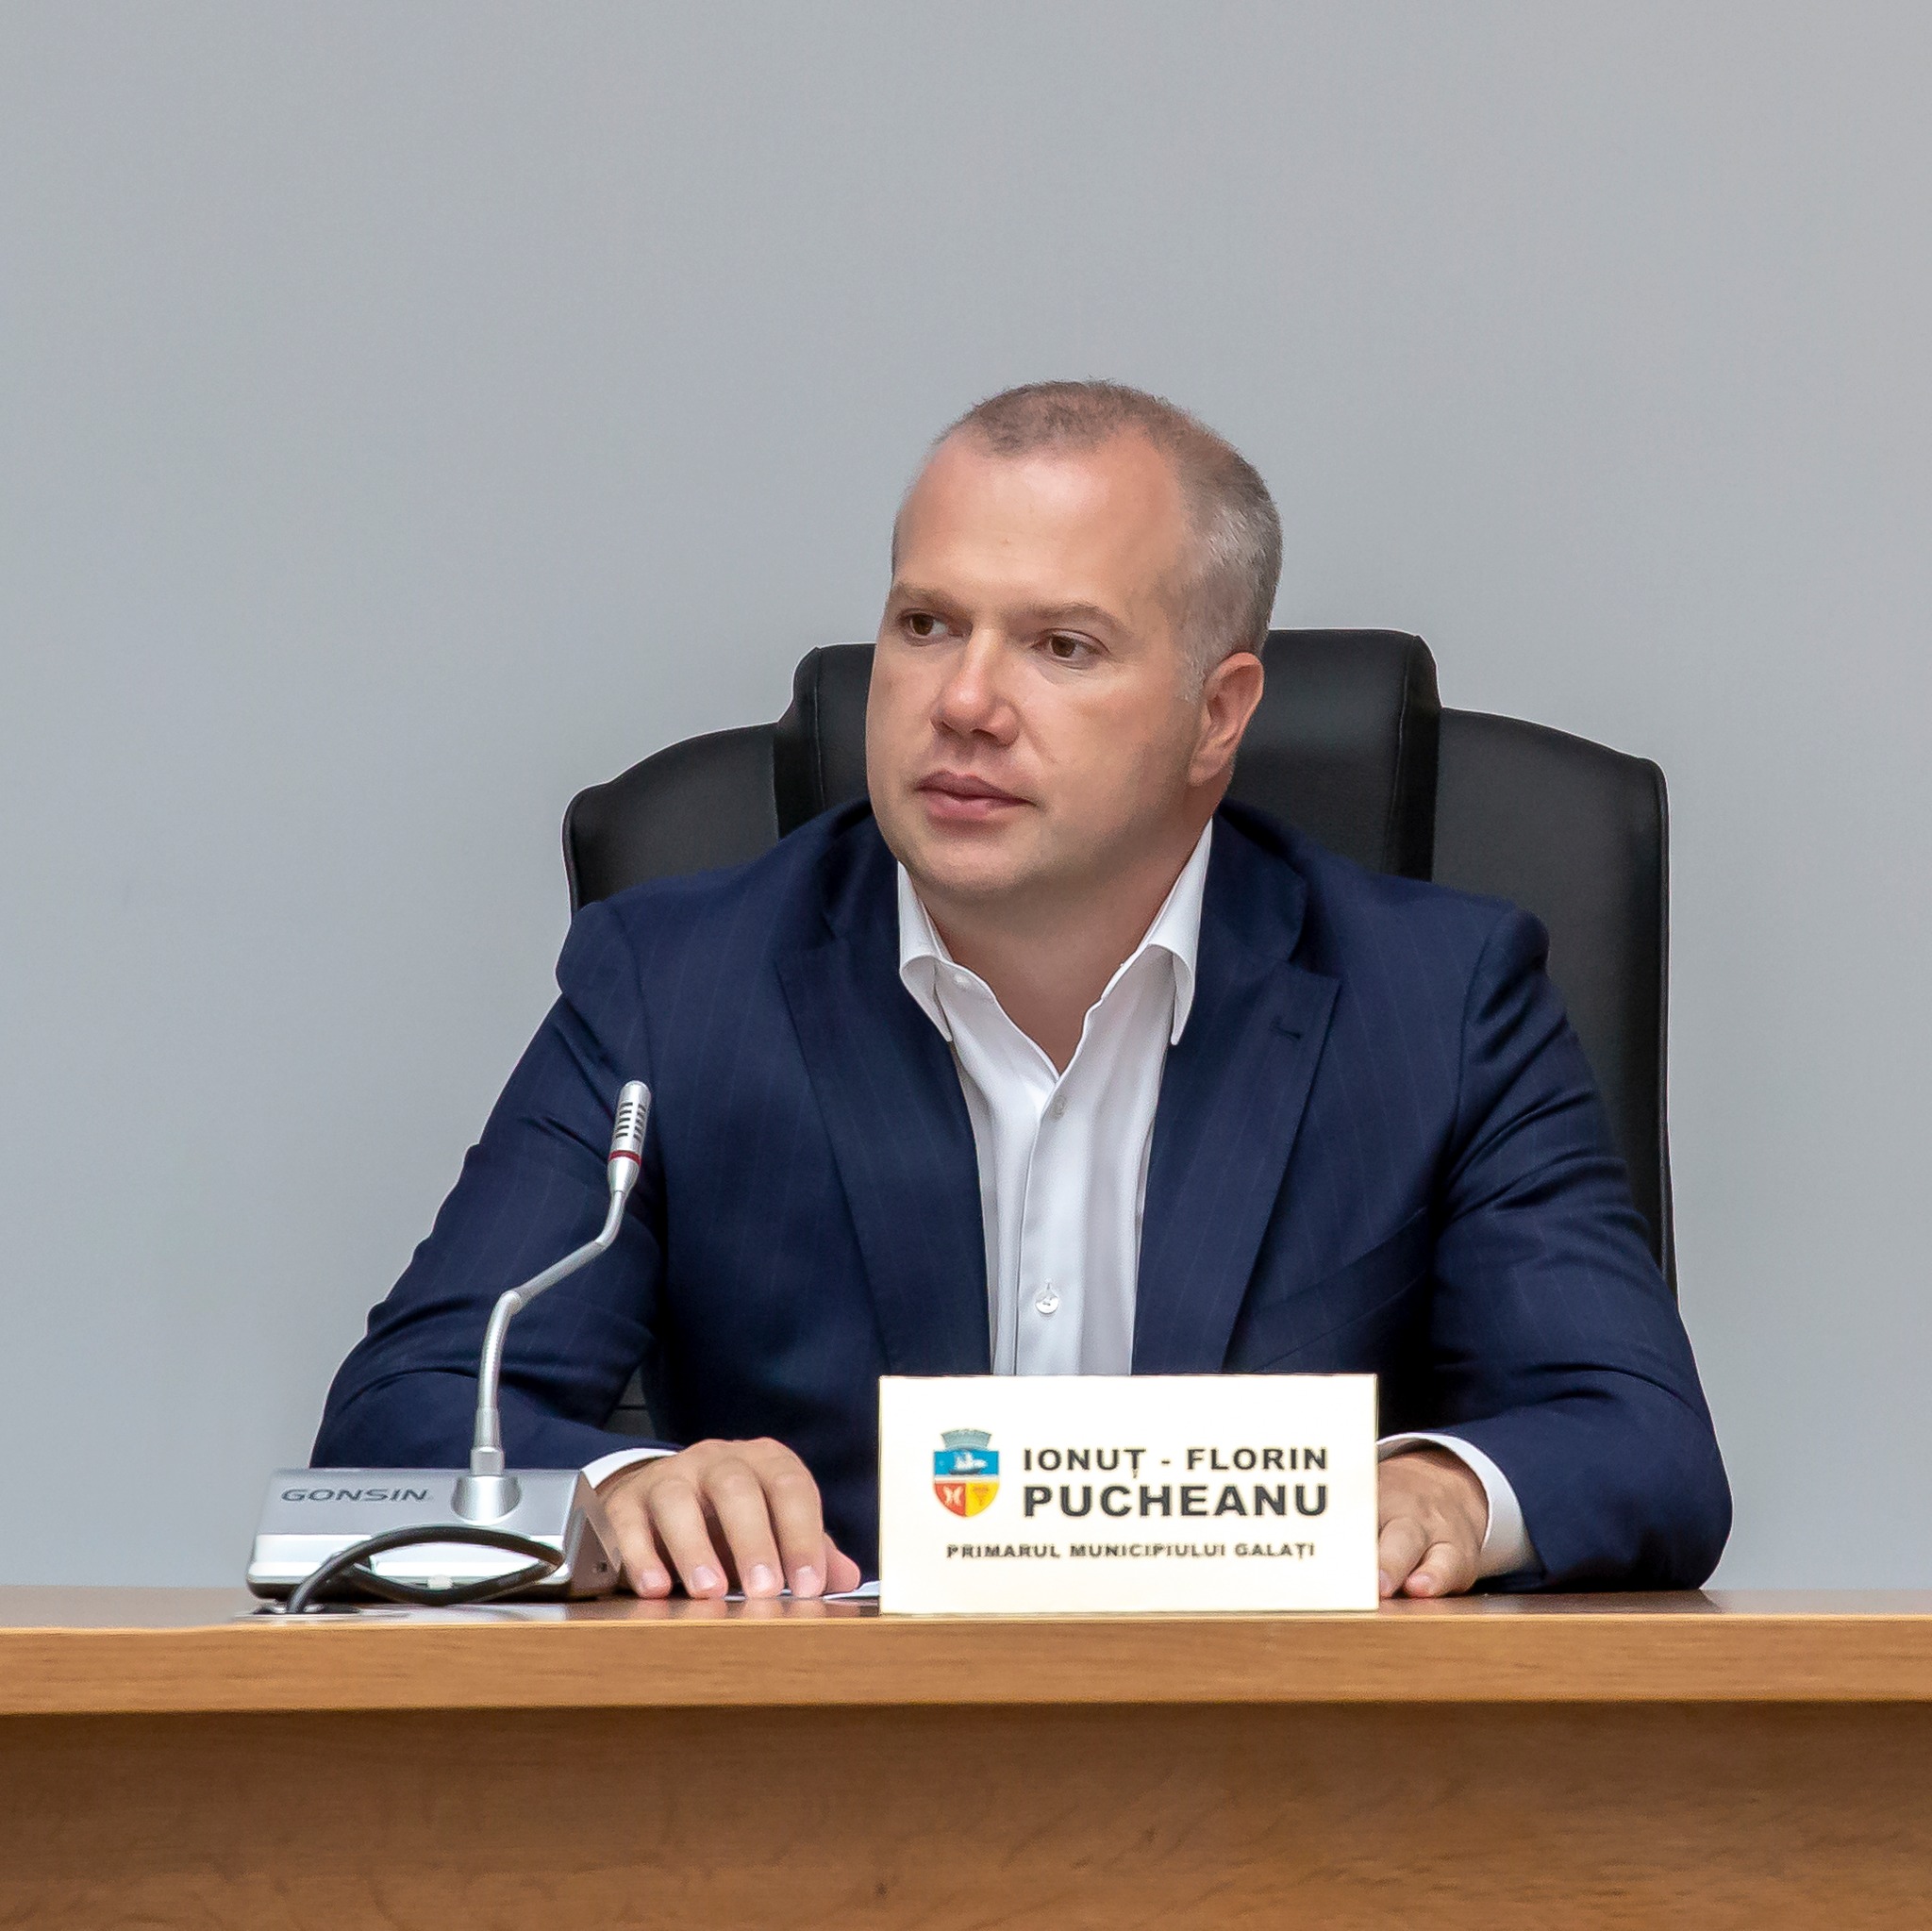 Ionuţ Pucheanu: ”Şomaj de 0,7% în municipiul Galaţi. Cifrele vorbesc”